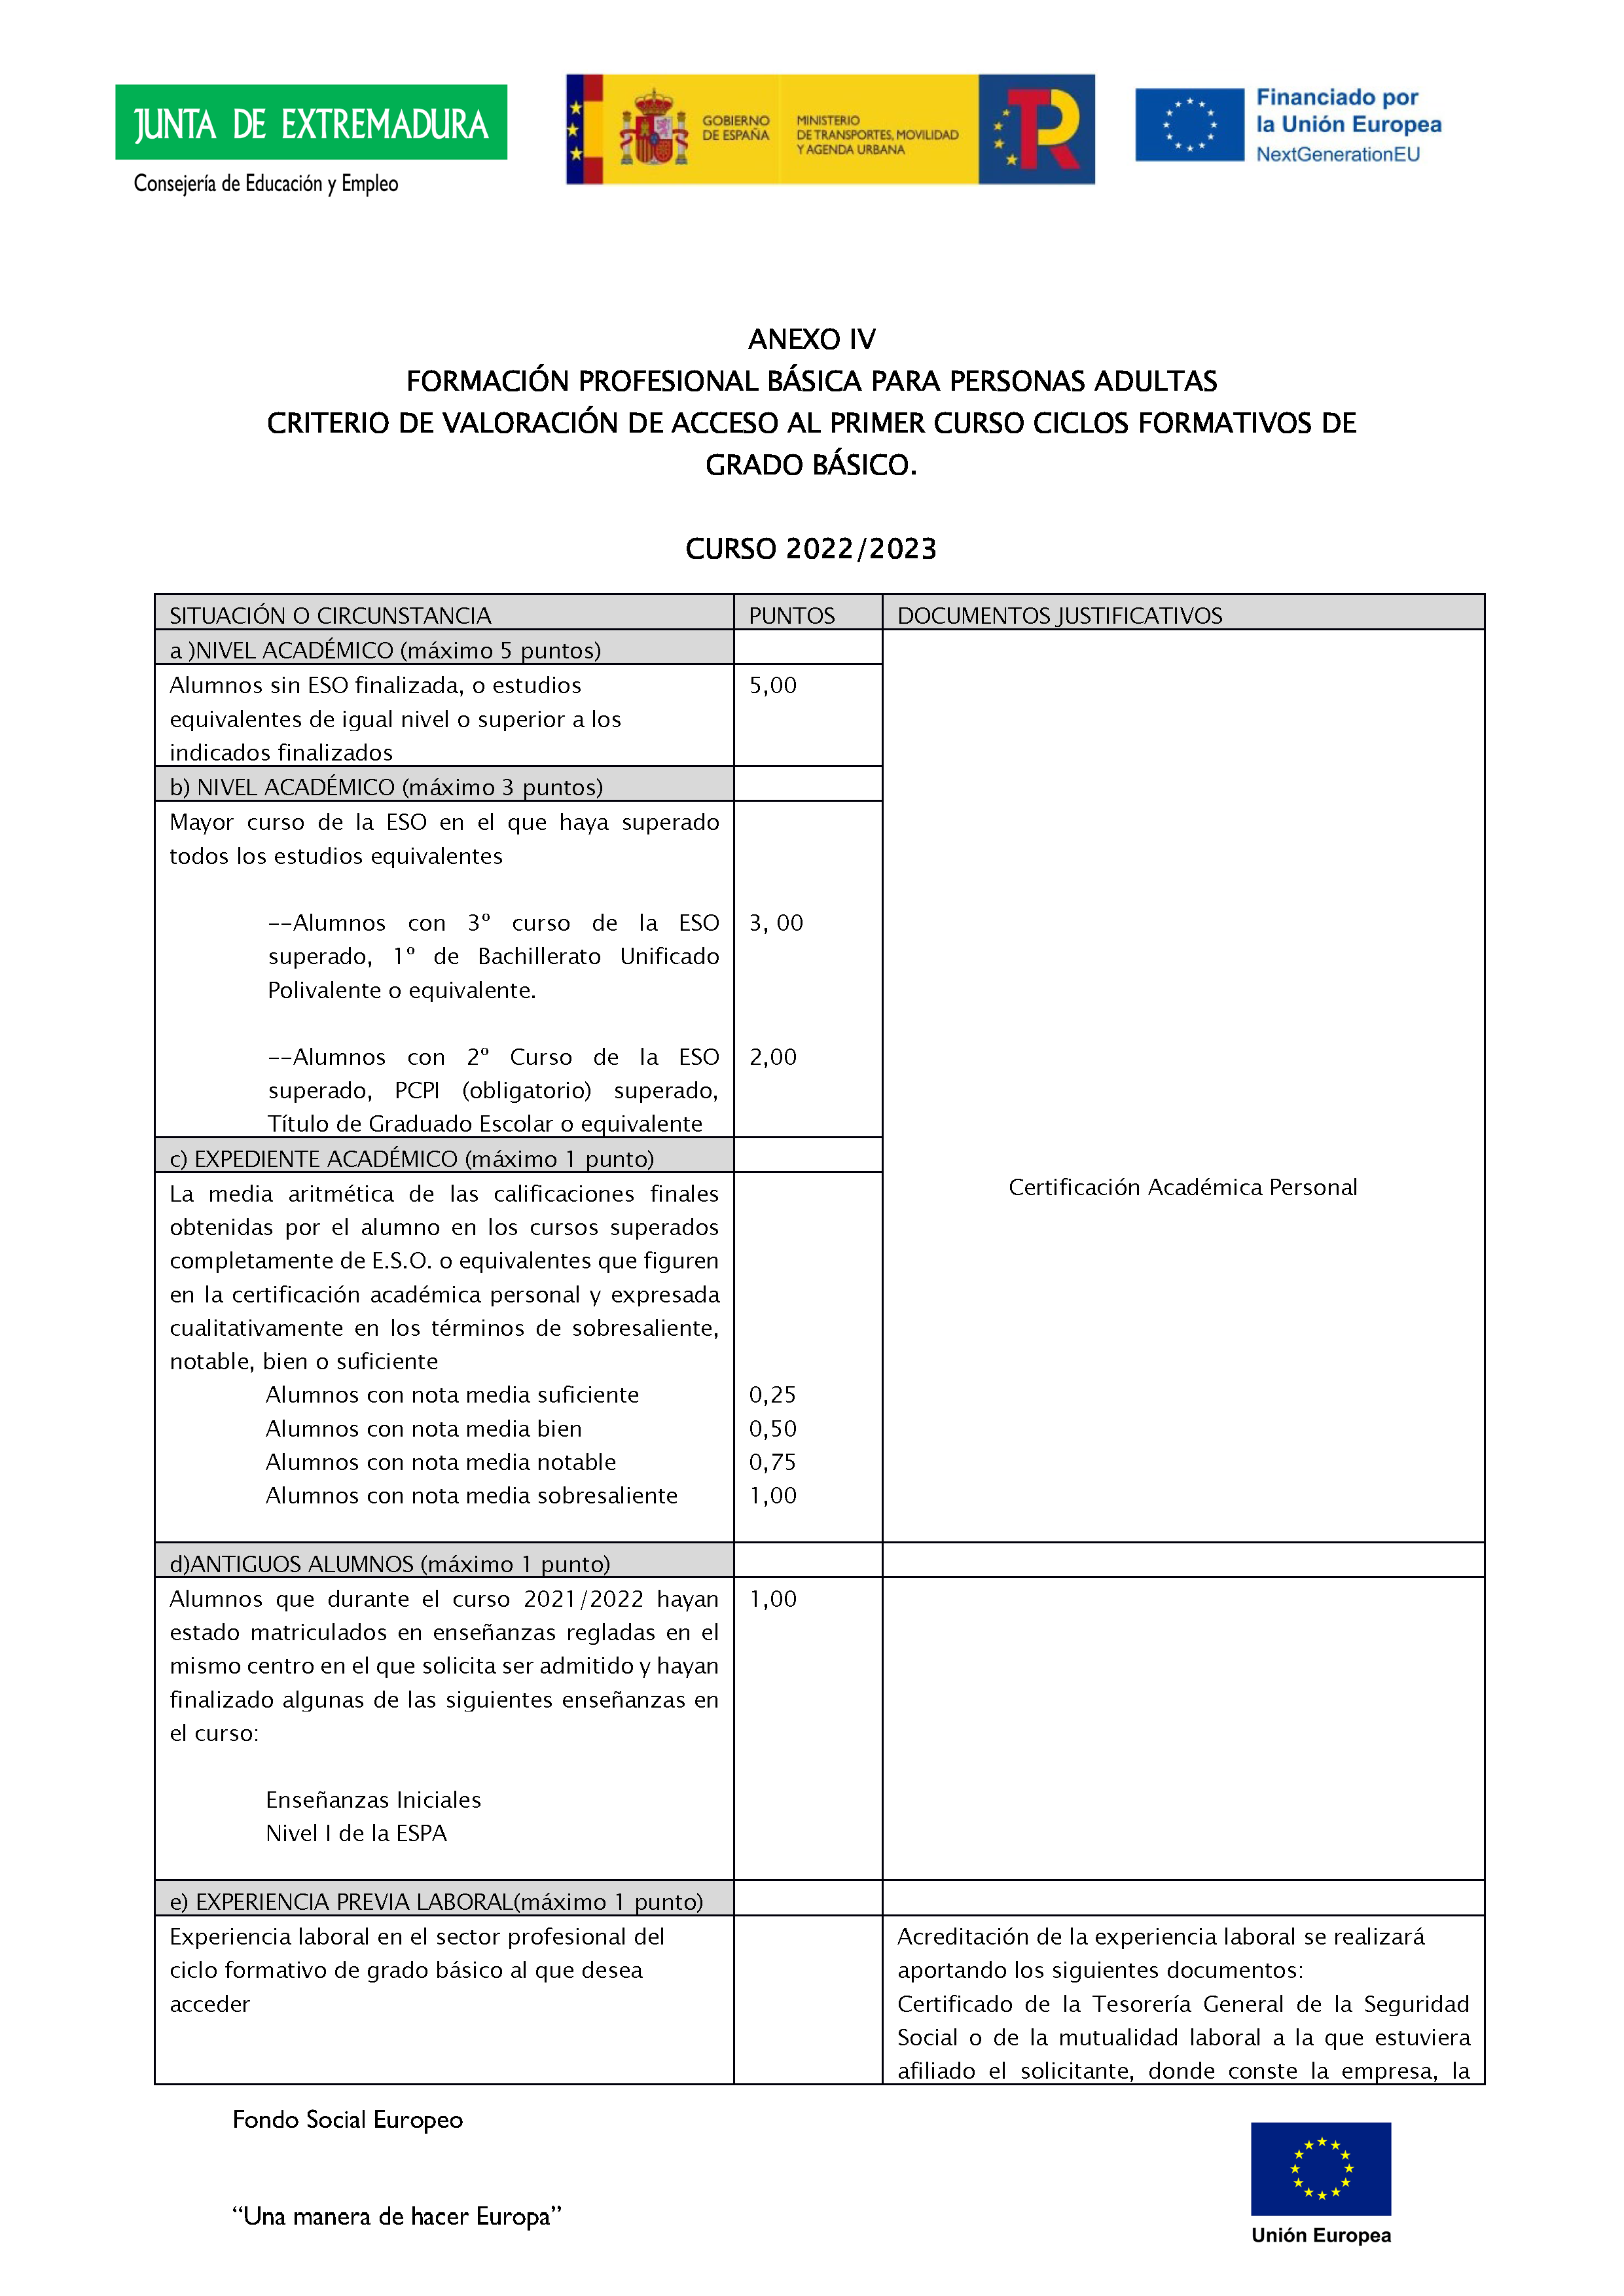 ANEXO IFORMACIÓN PROFESIONAL BÁSICA// CICLOS FORMATIVOS DE GRADO BÁSICO PARA PERSONAS ADULTAS Pag 5